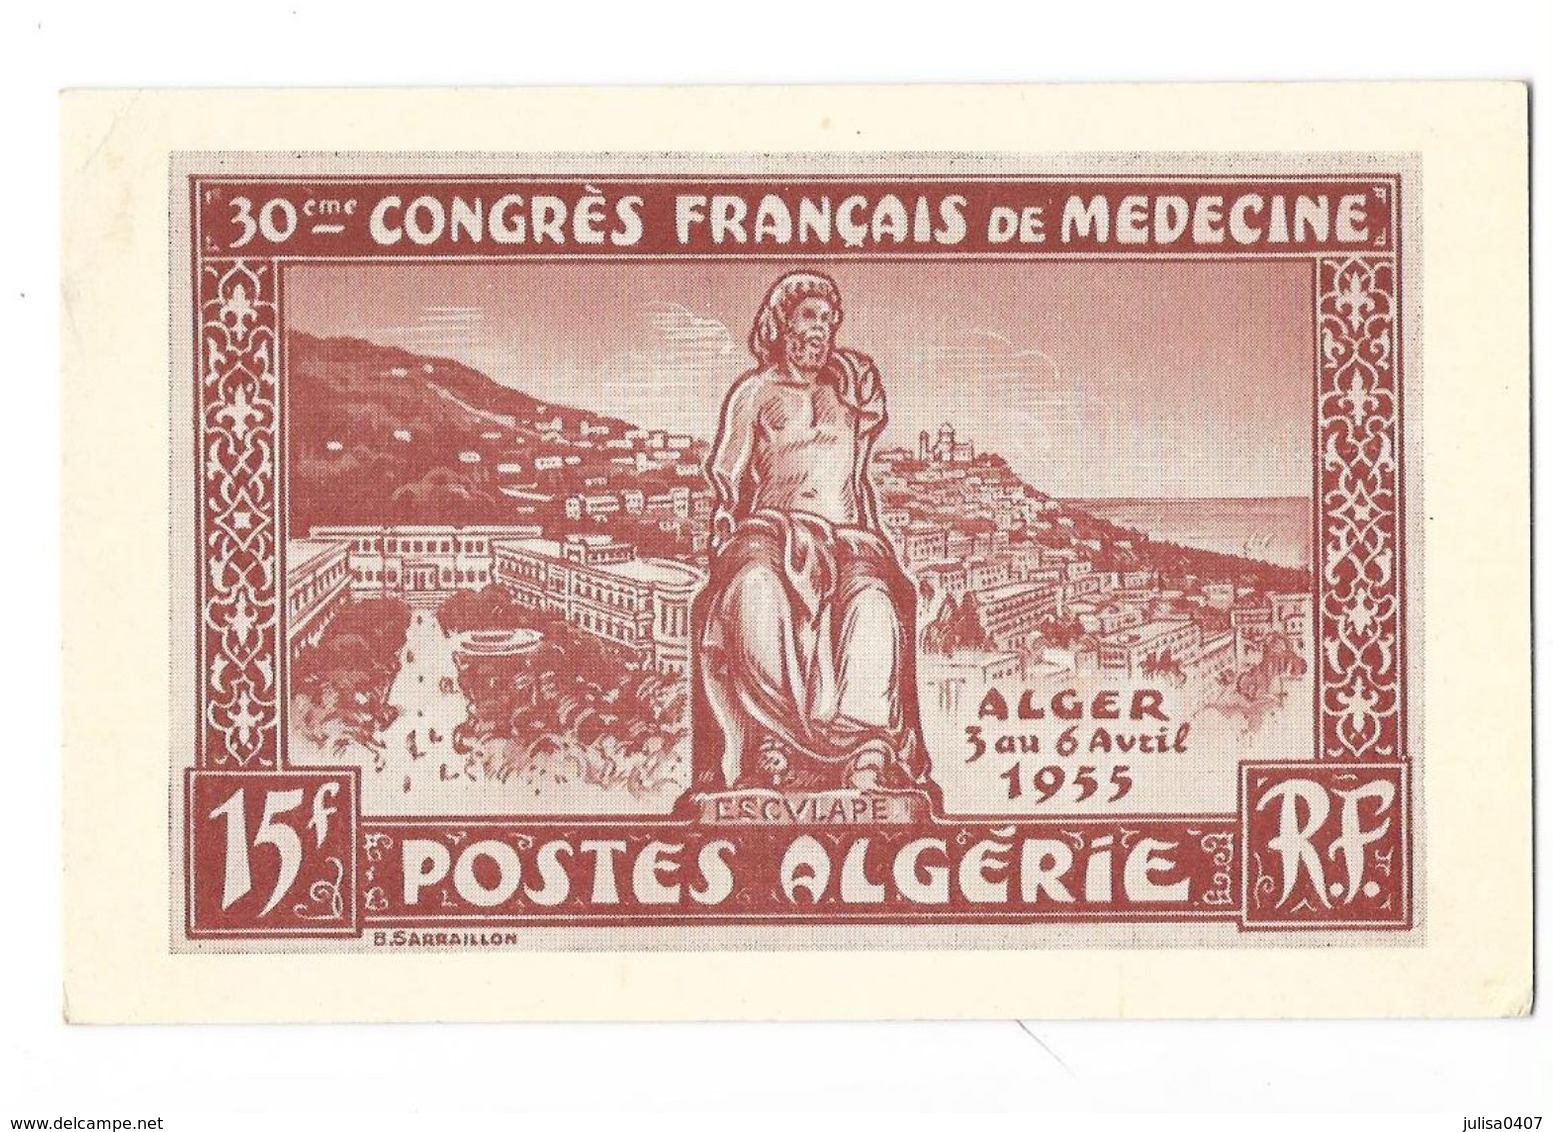 ALGER (Algérie) Carte Illustrée 30ème Congrès Français De Medecine 1955 - Alger